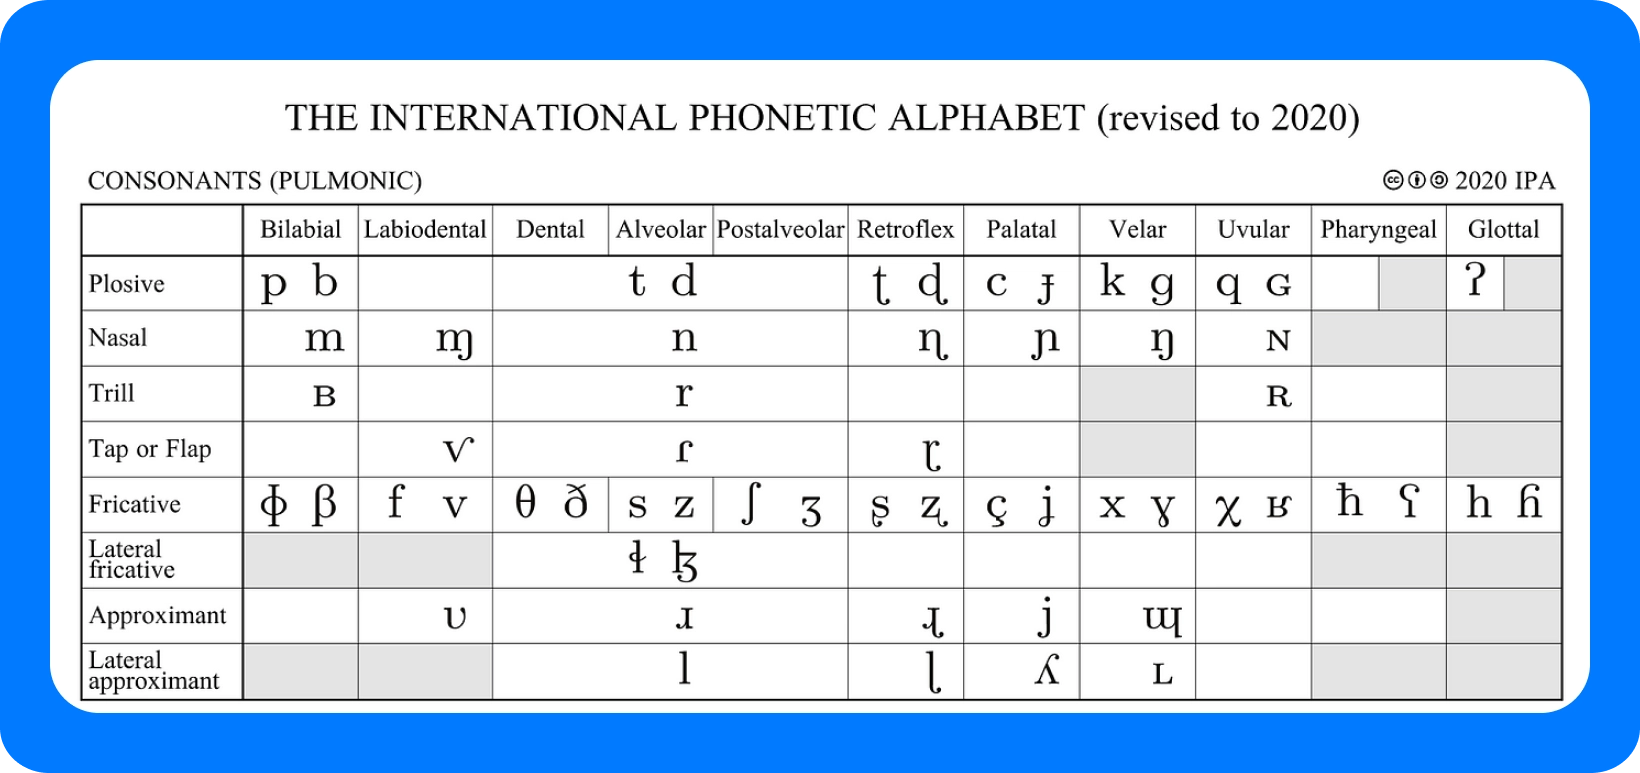 Grafikon međunarodne fonetske abecede za suglasnike, revidiran 2020. godine, s pojedinostima o točkama artikulacije.